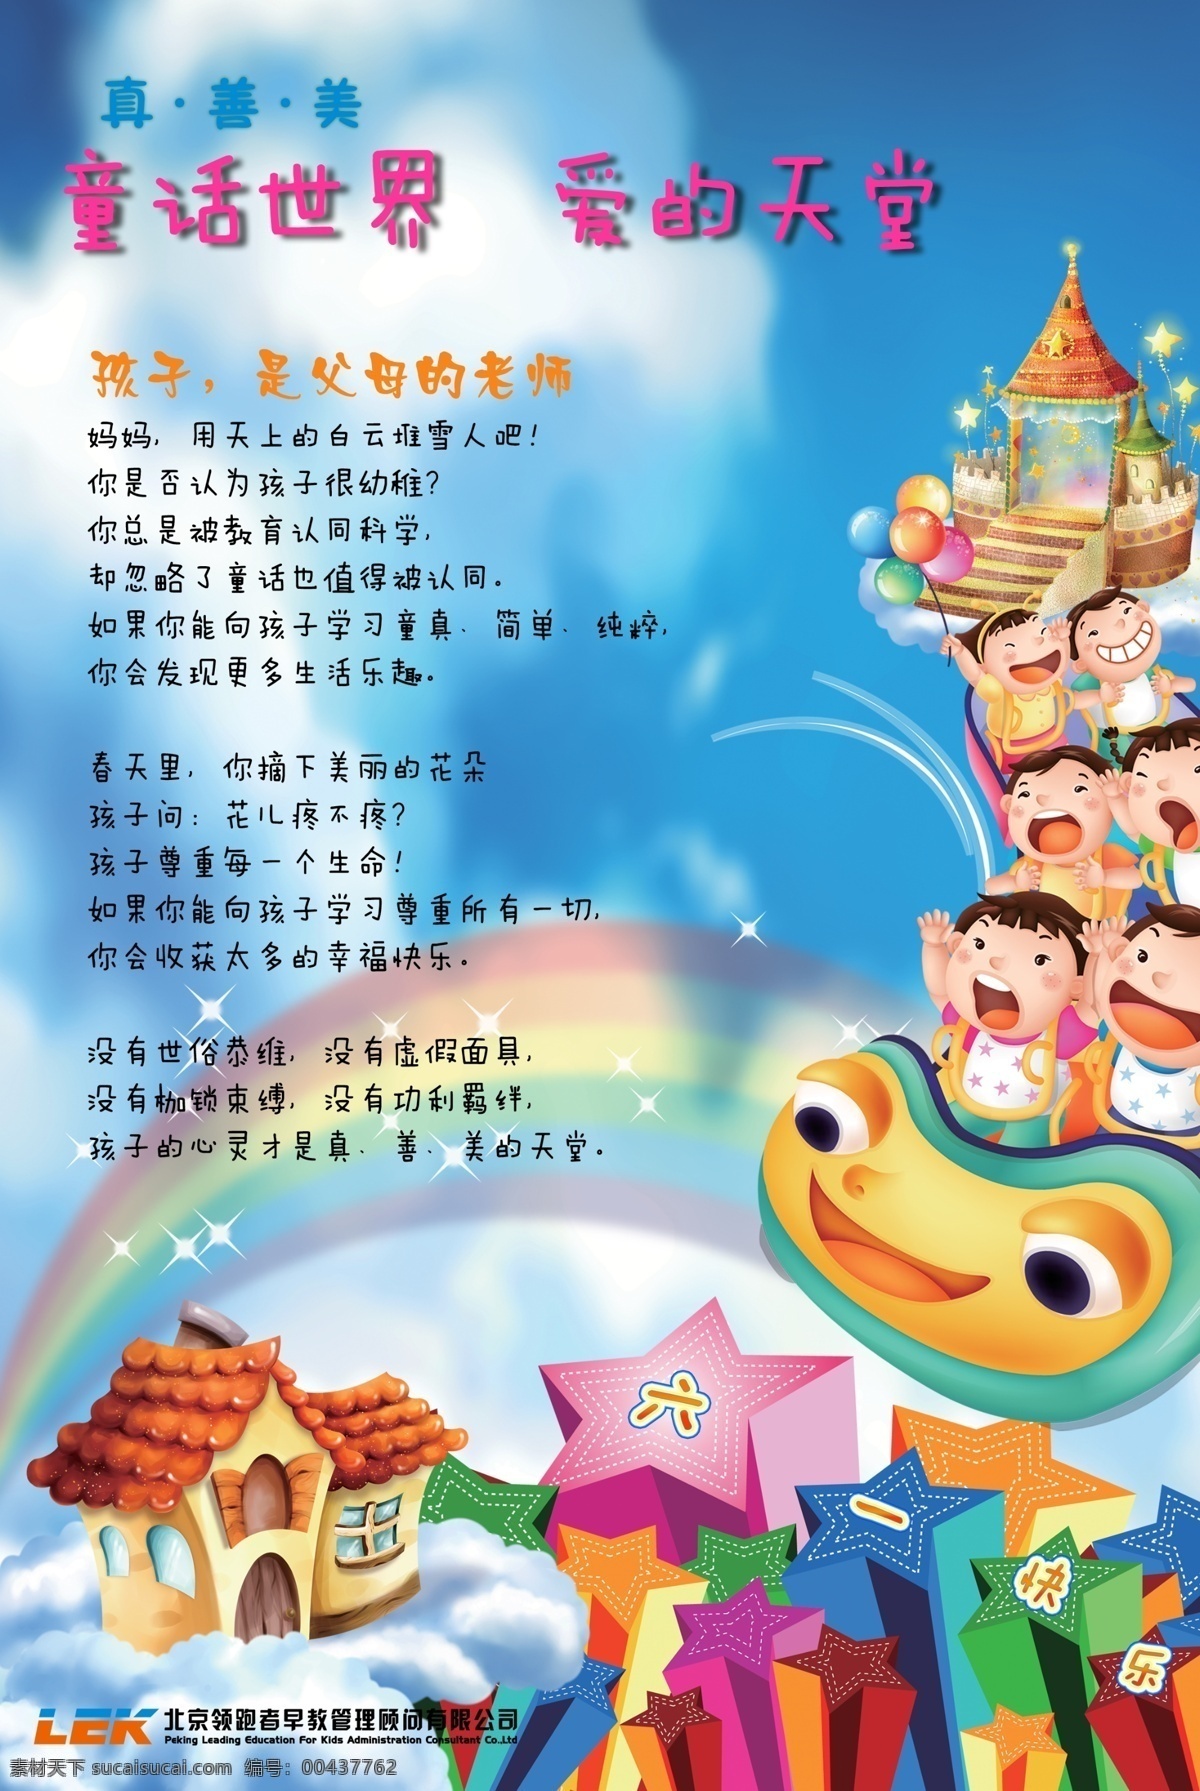 儿童卡通画 广告设计模板 六一儿童节 源文件 真善美 模板下载 北京 领跑者 早教 顾问 管理 节日素材